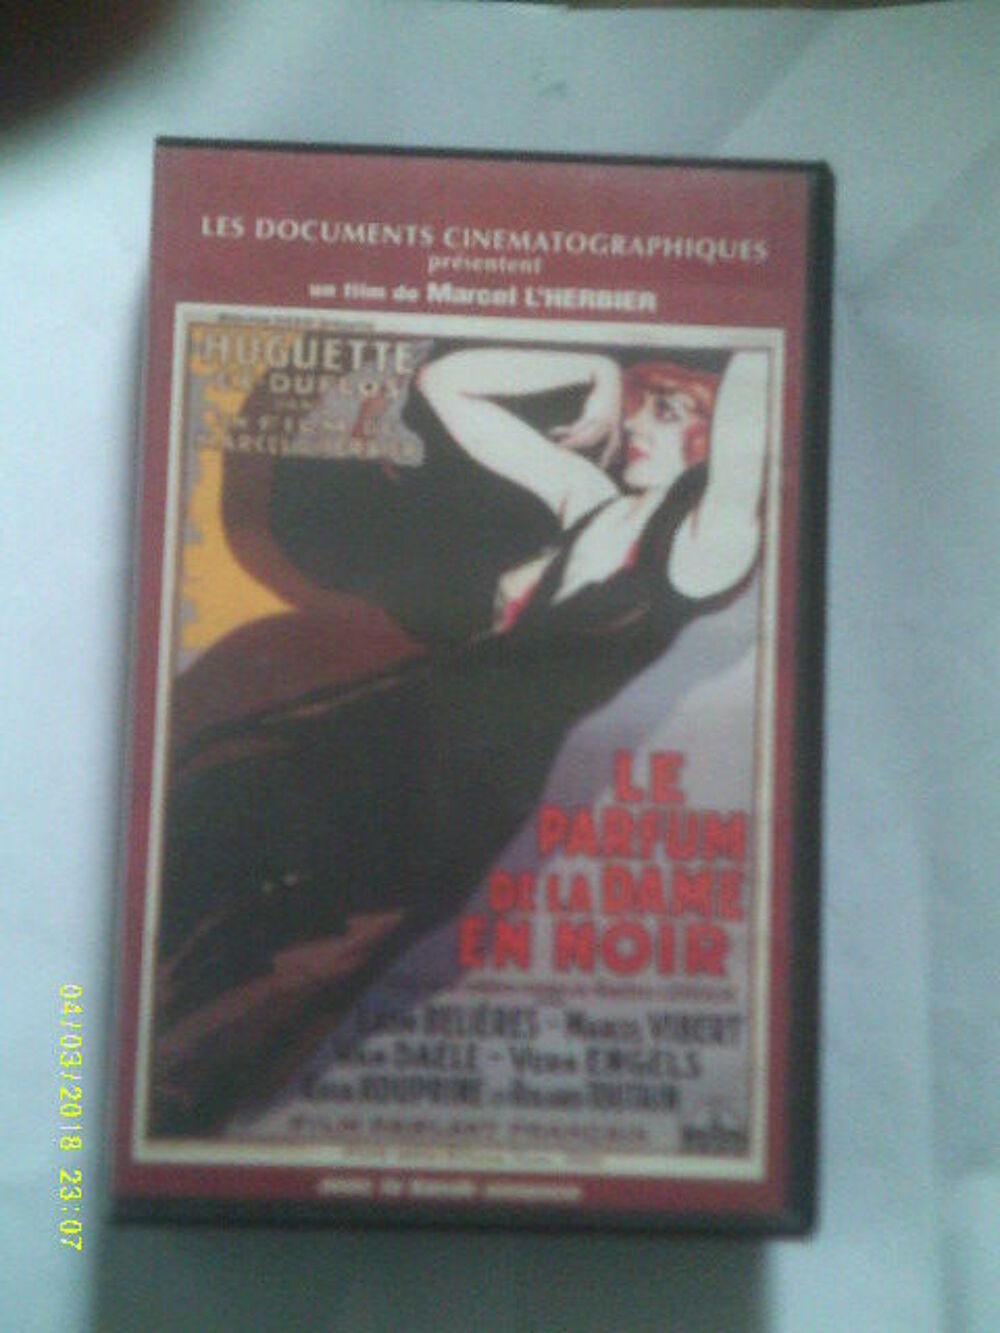 LE PARFUM DE LA DAME EN NOIR avec huguette Duflos DVD et blu-ray